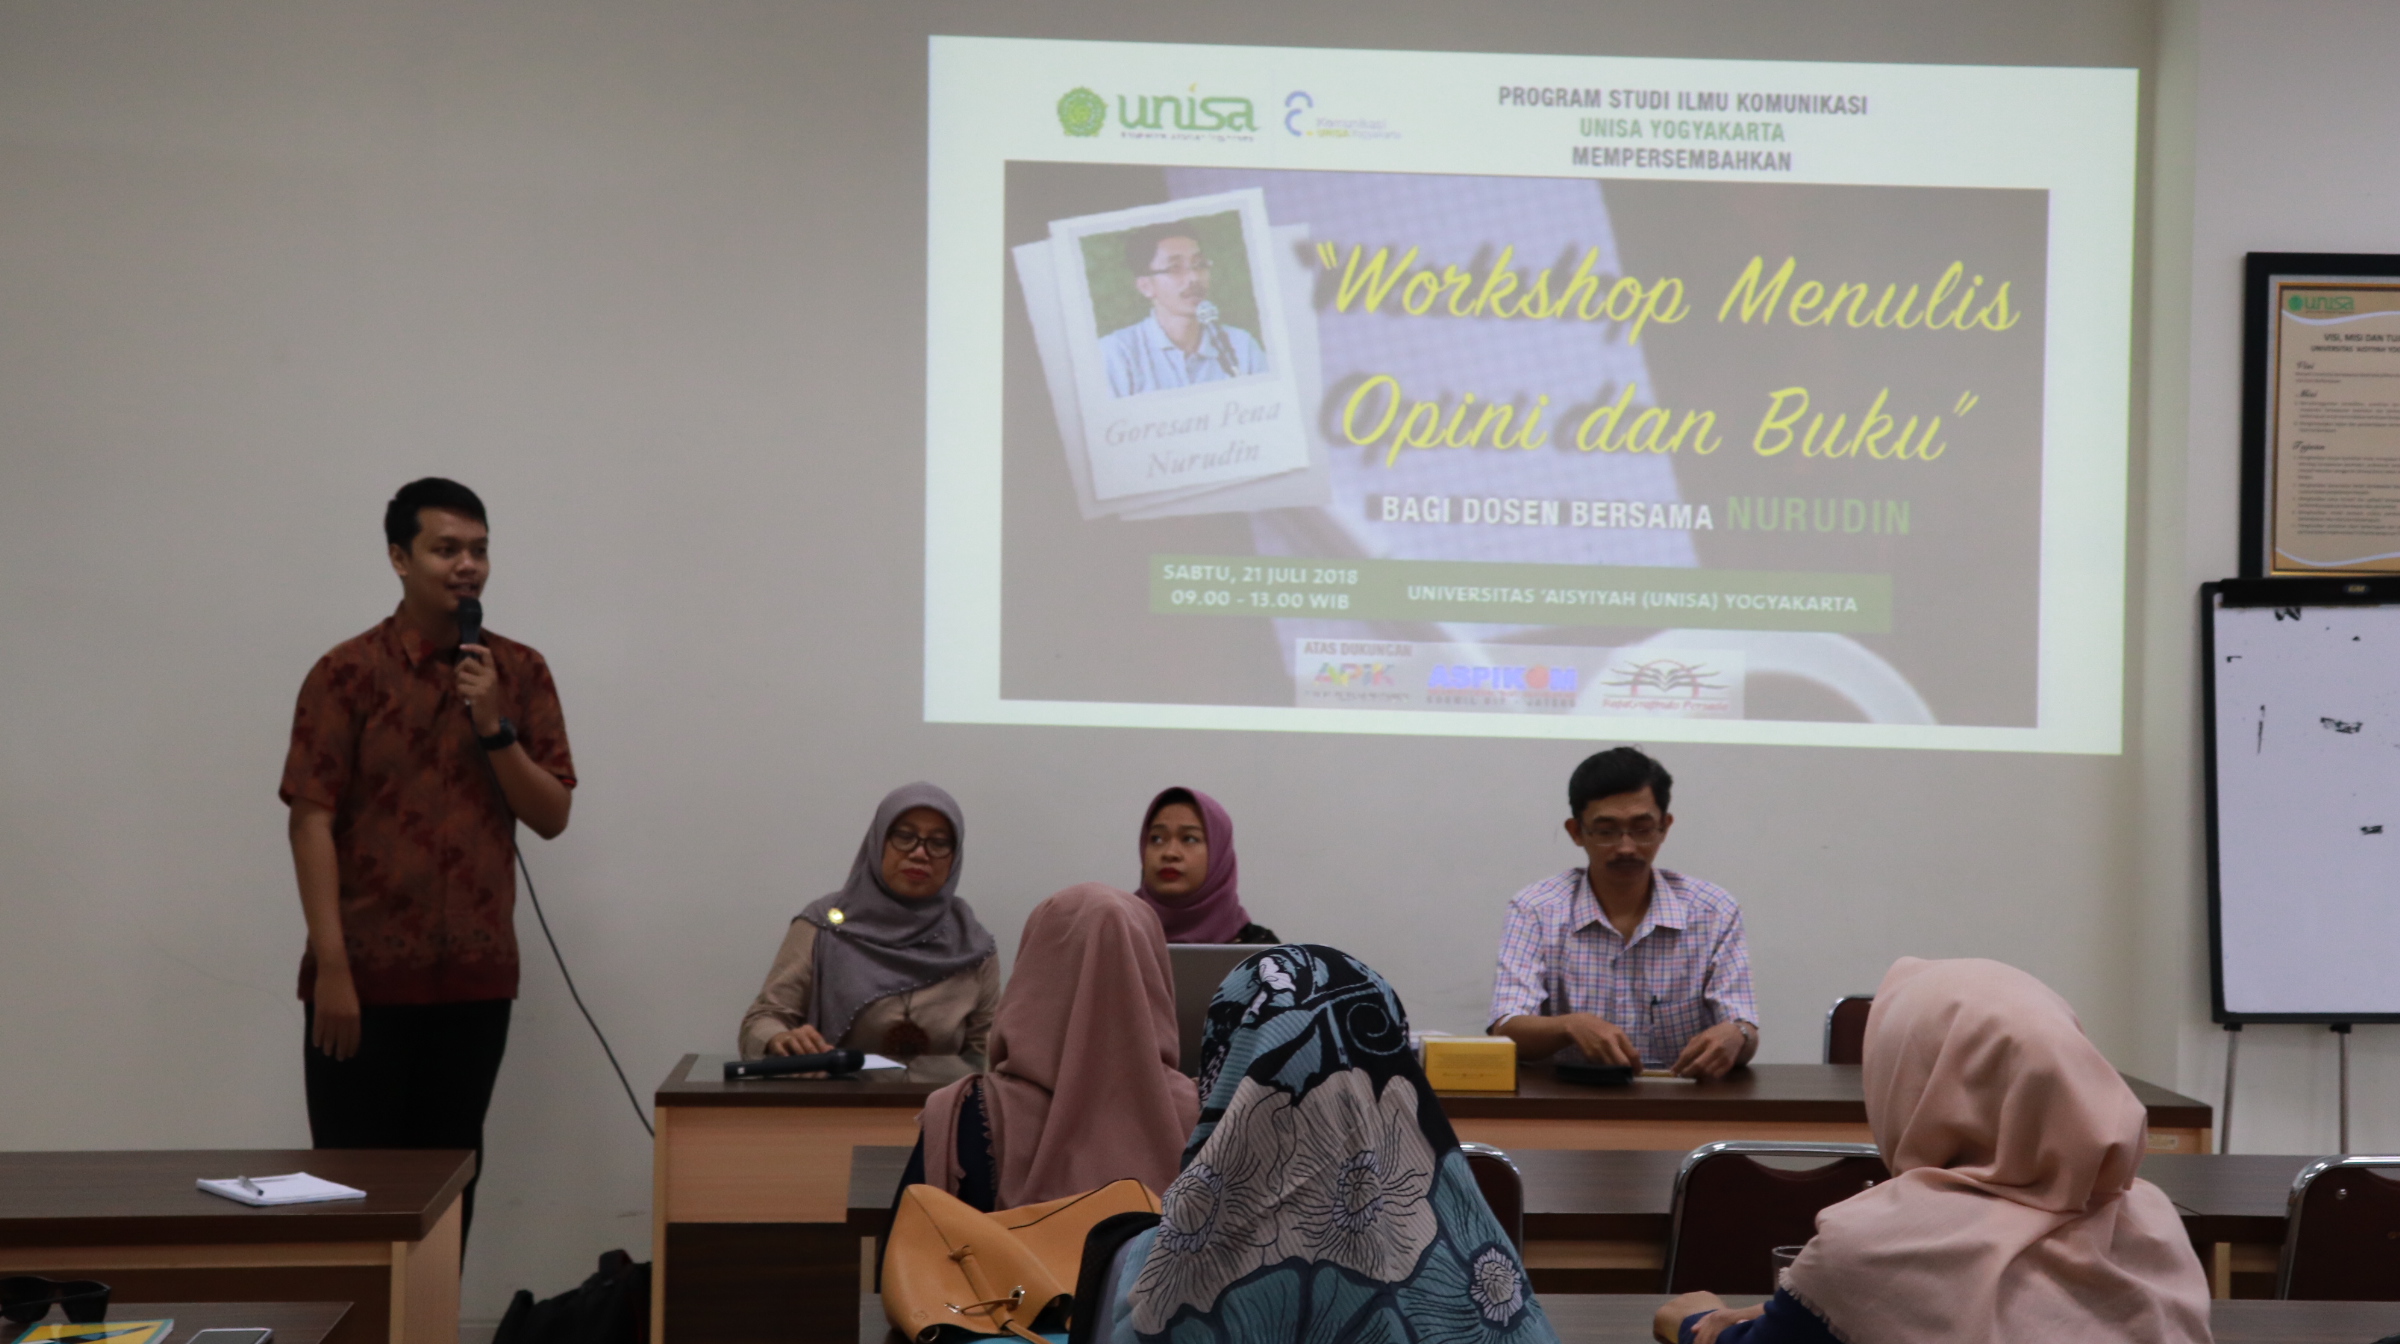 Ilmu Komunikasi UNISA “Workshop Menulis Opini dan Buku”